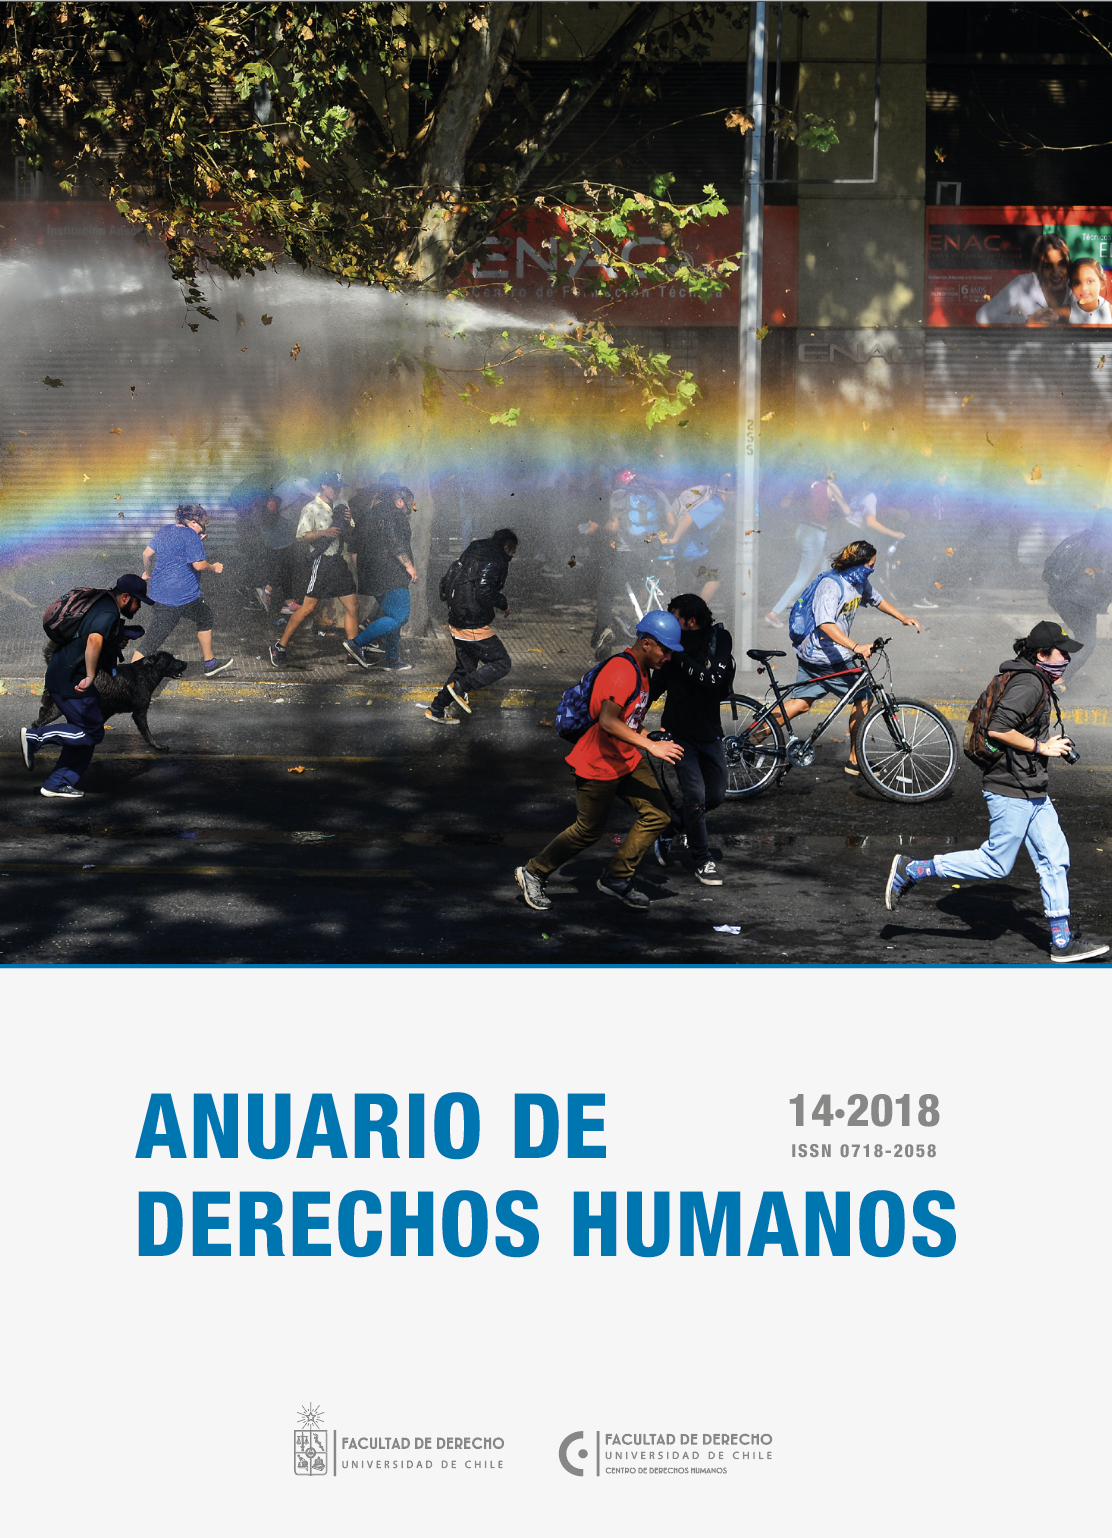 											Ver Núm. 14 (2018): Anuario de Derechos Humanos 2018
										